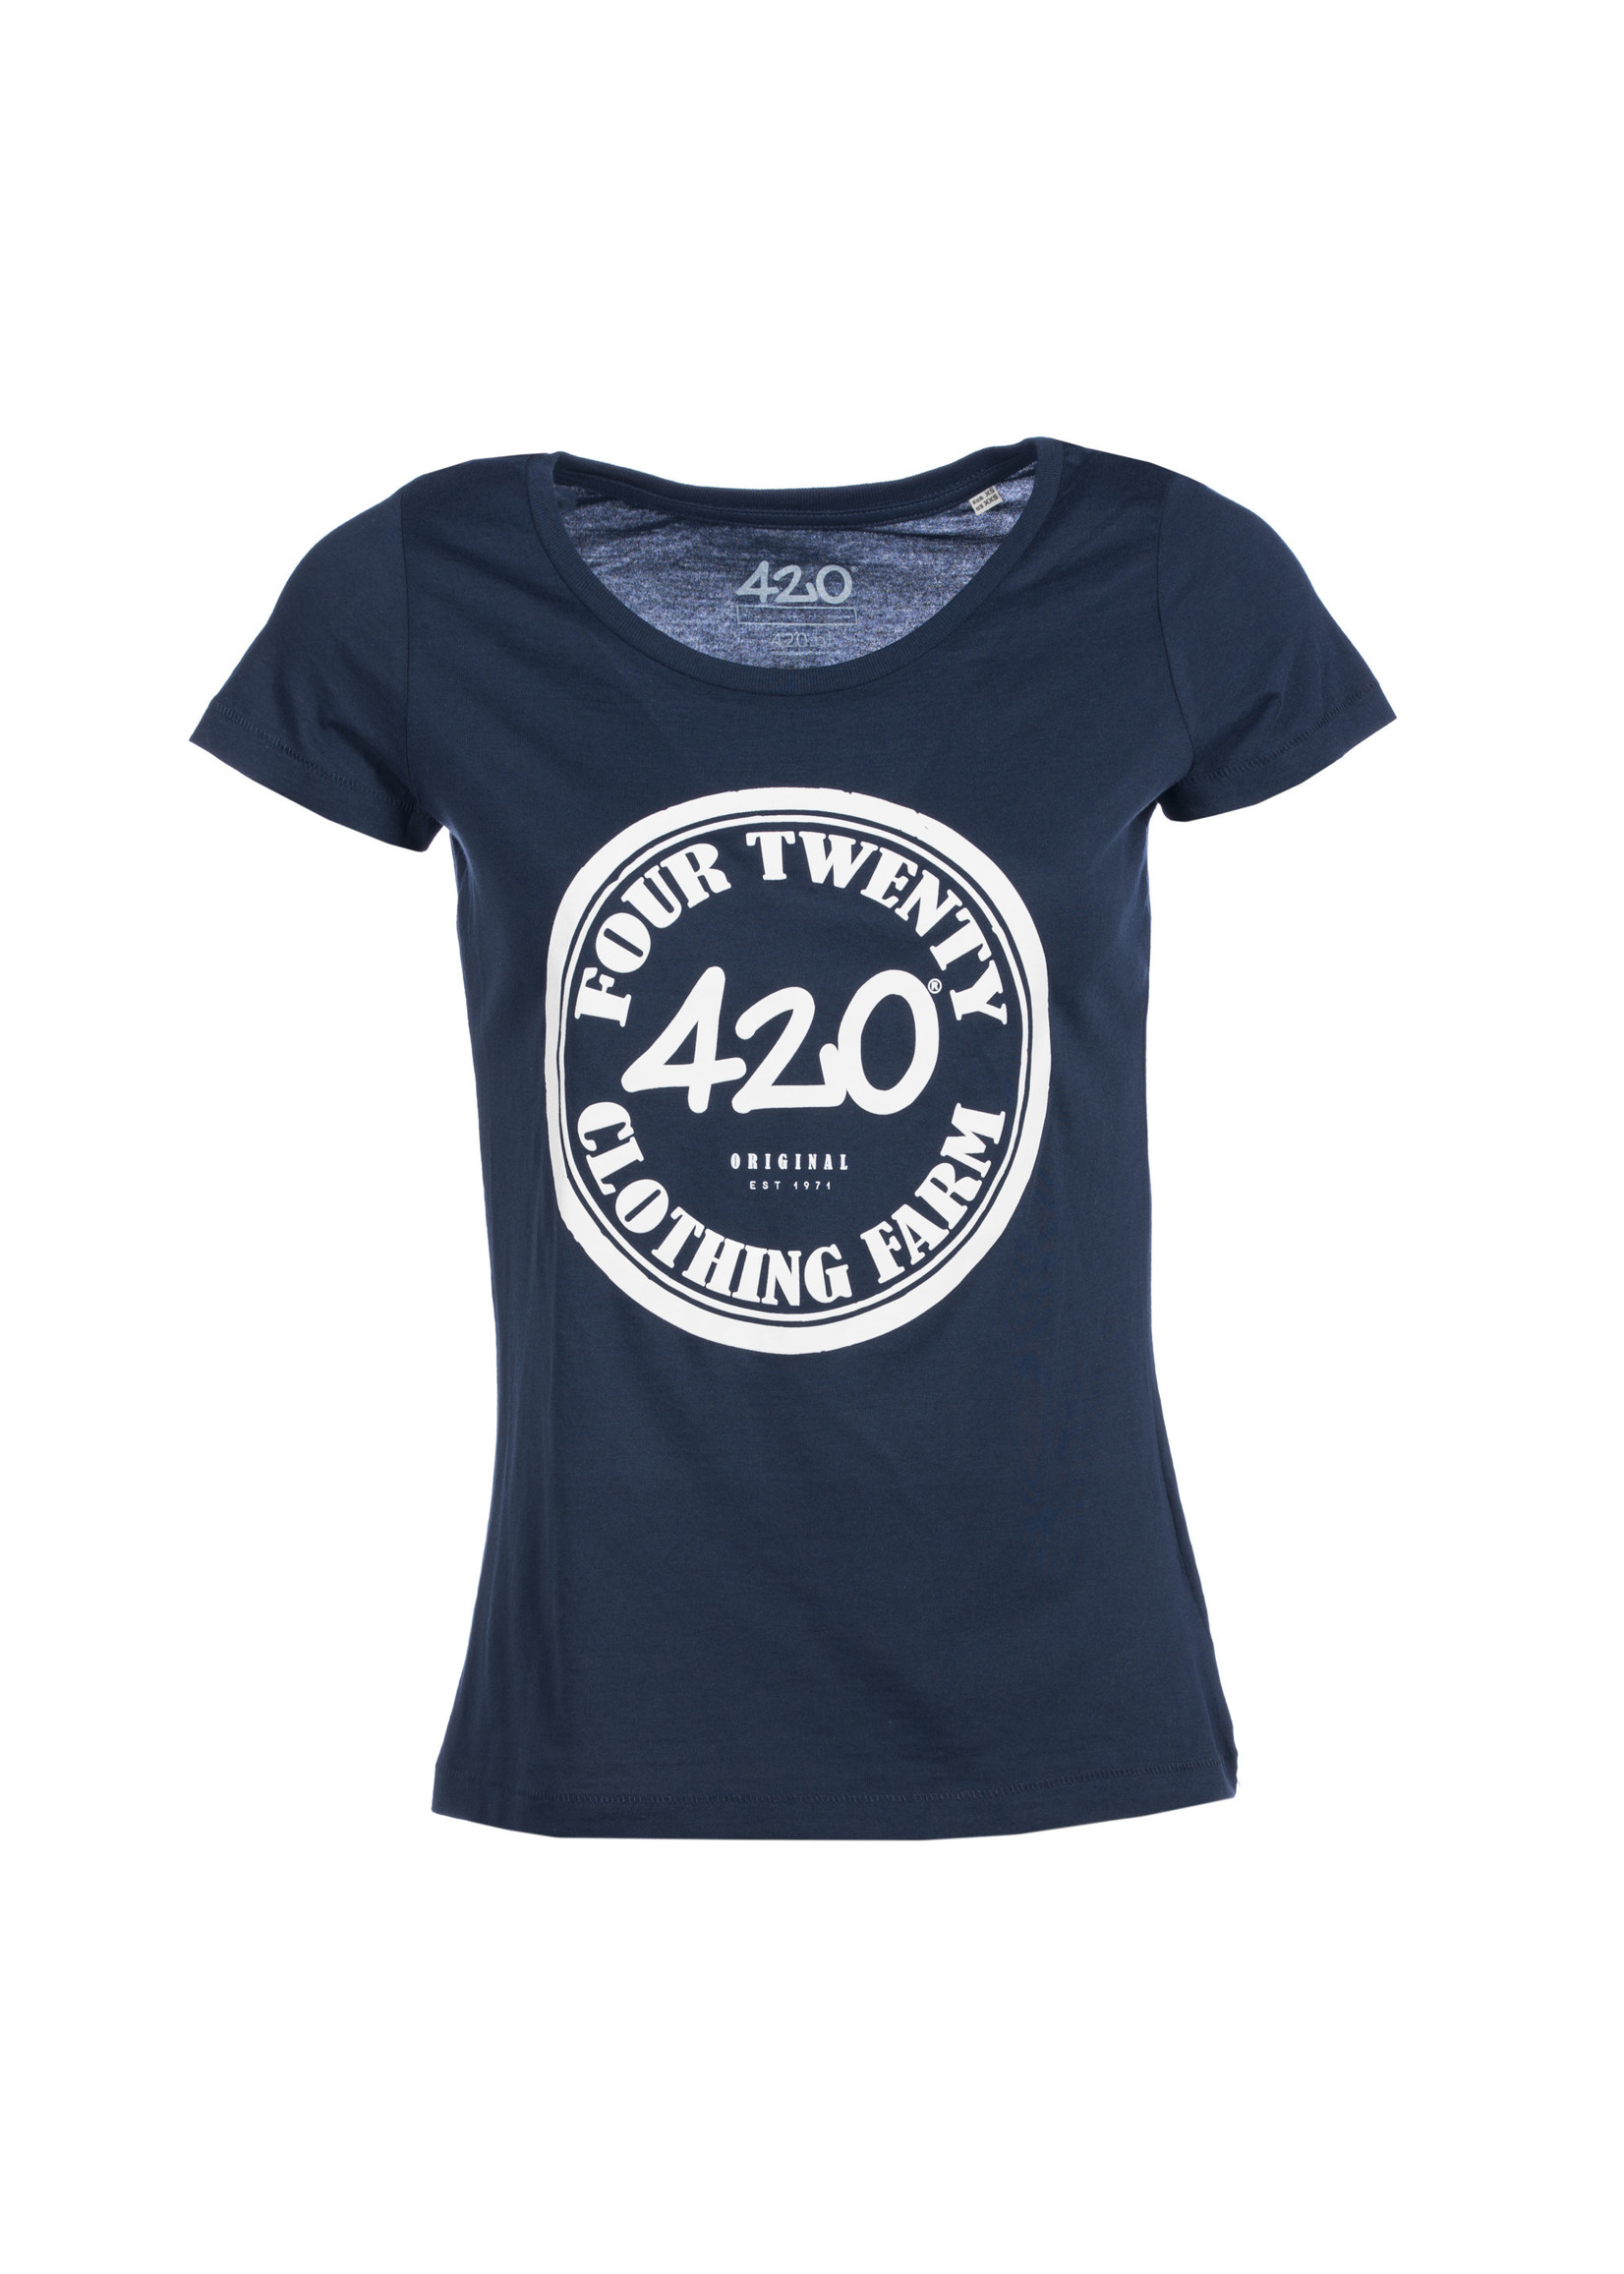 420 Original Clothing Farm T-Shirt 420 Vintage blue female